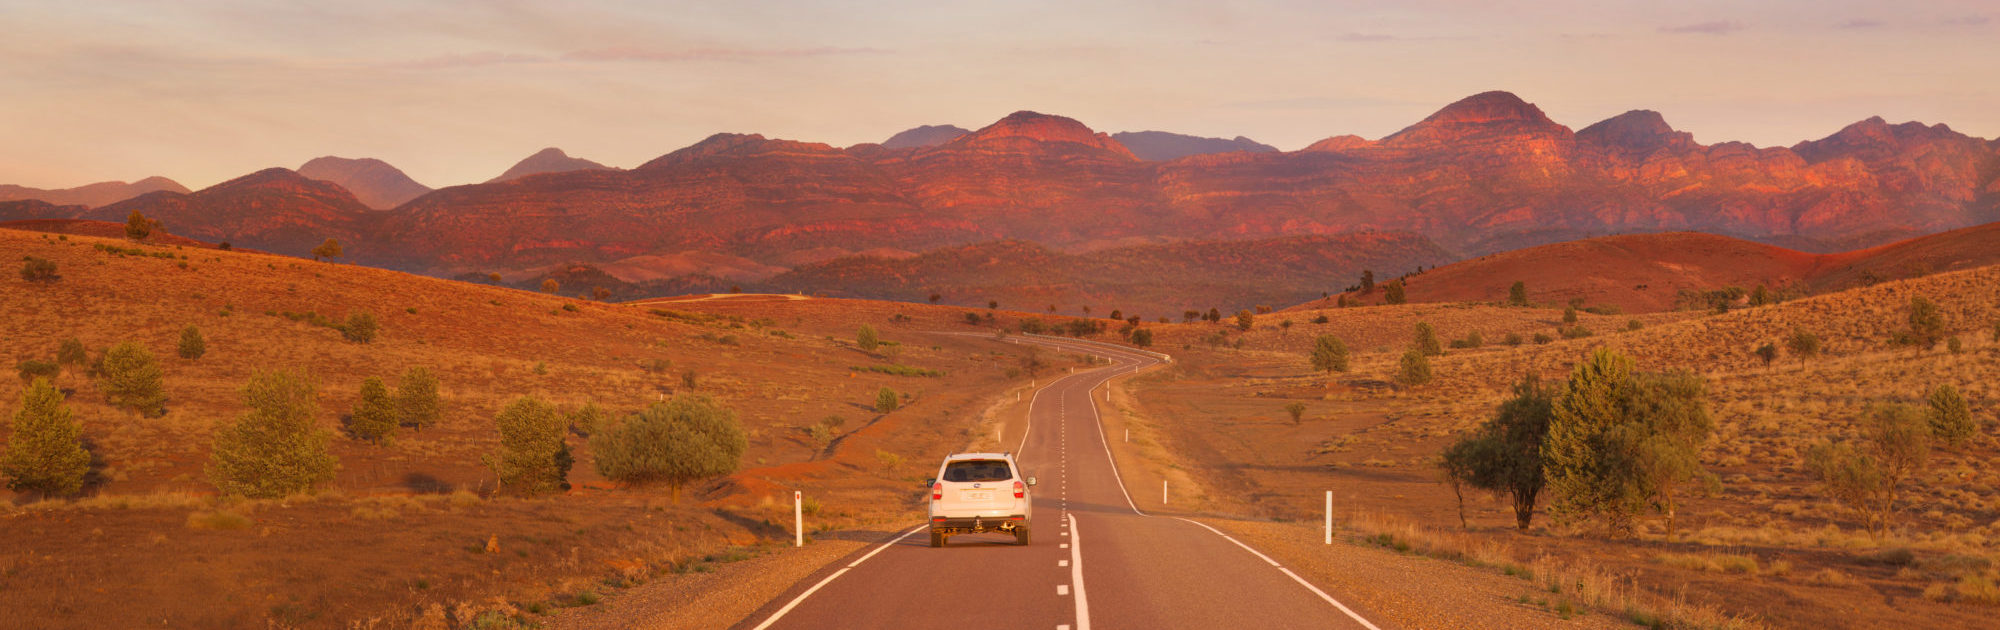 Australien_South Australia_Adelaide_Flinders Ranges Way_Auto vor Bergen / Fotocredit: Adam Bruzzone